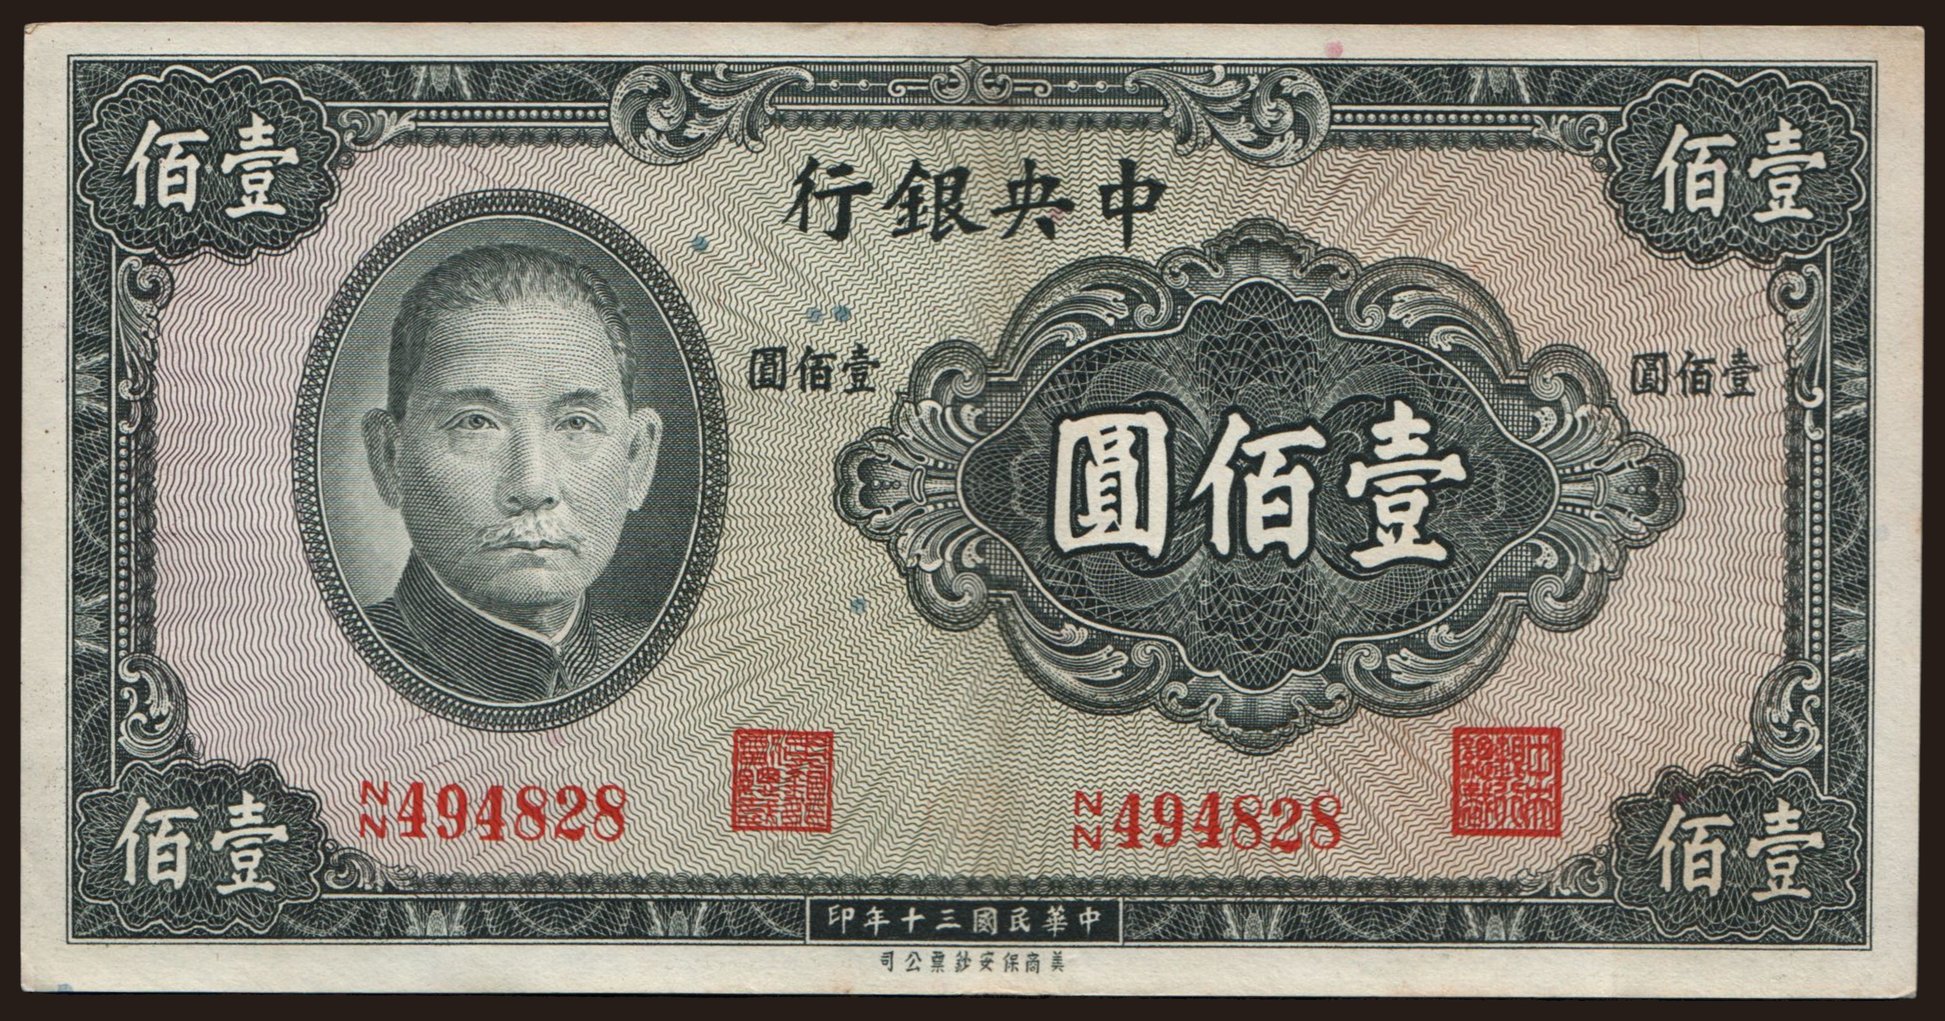 Central Bank of China, 100 yuan, 1941